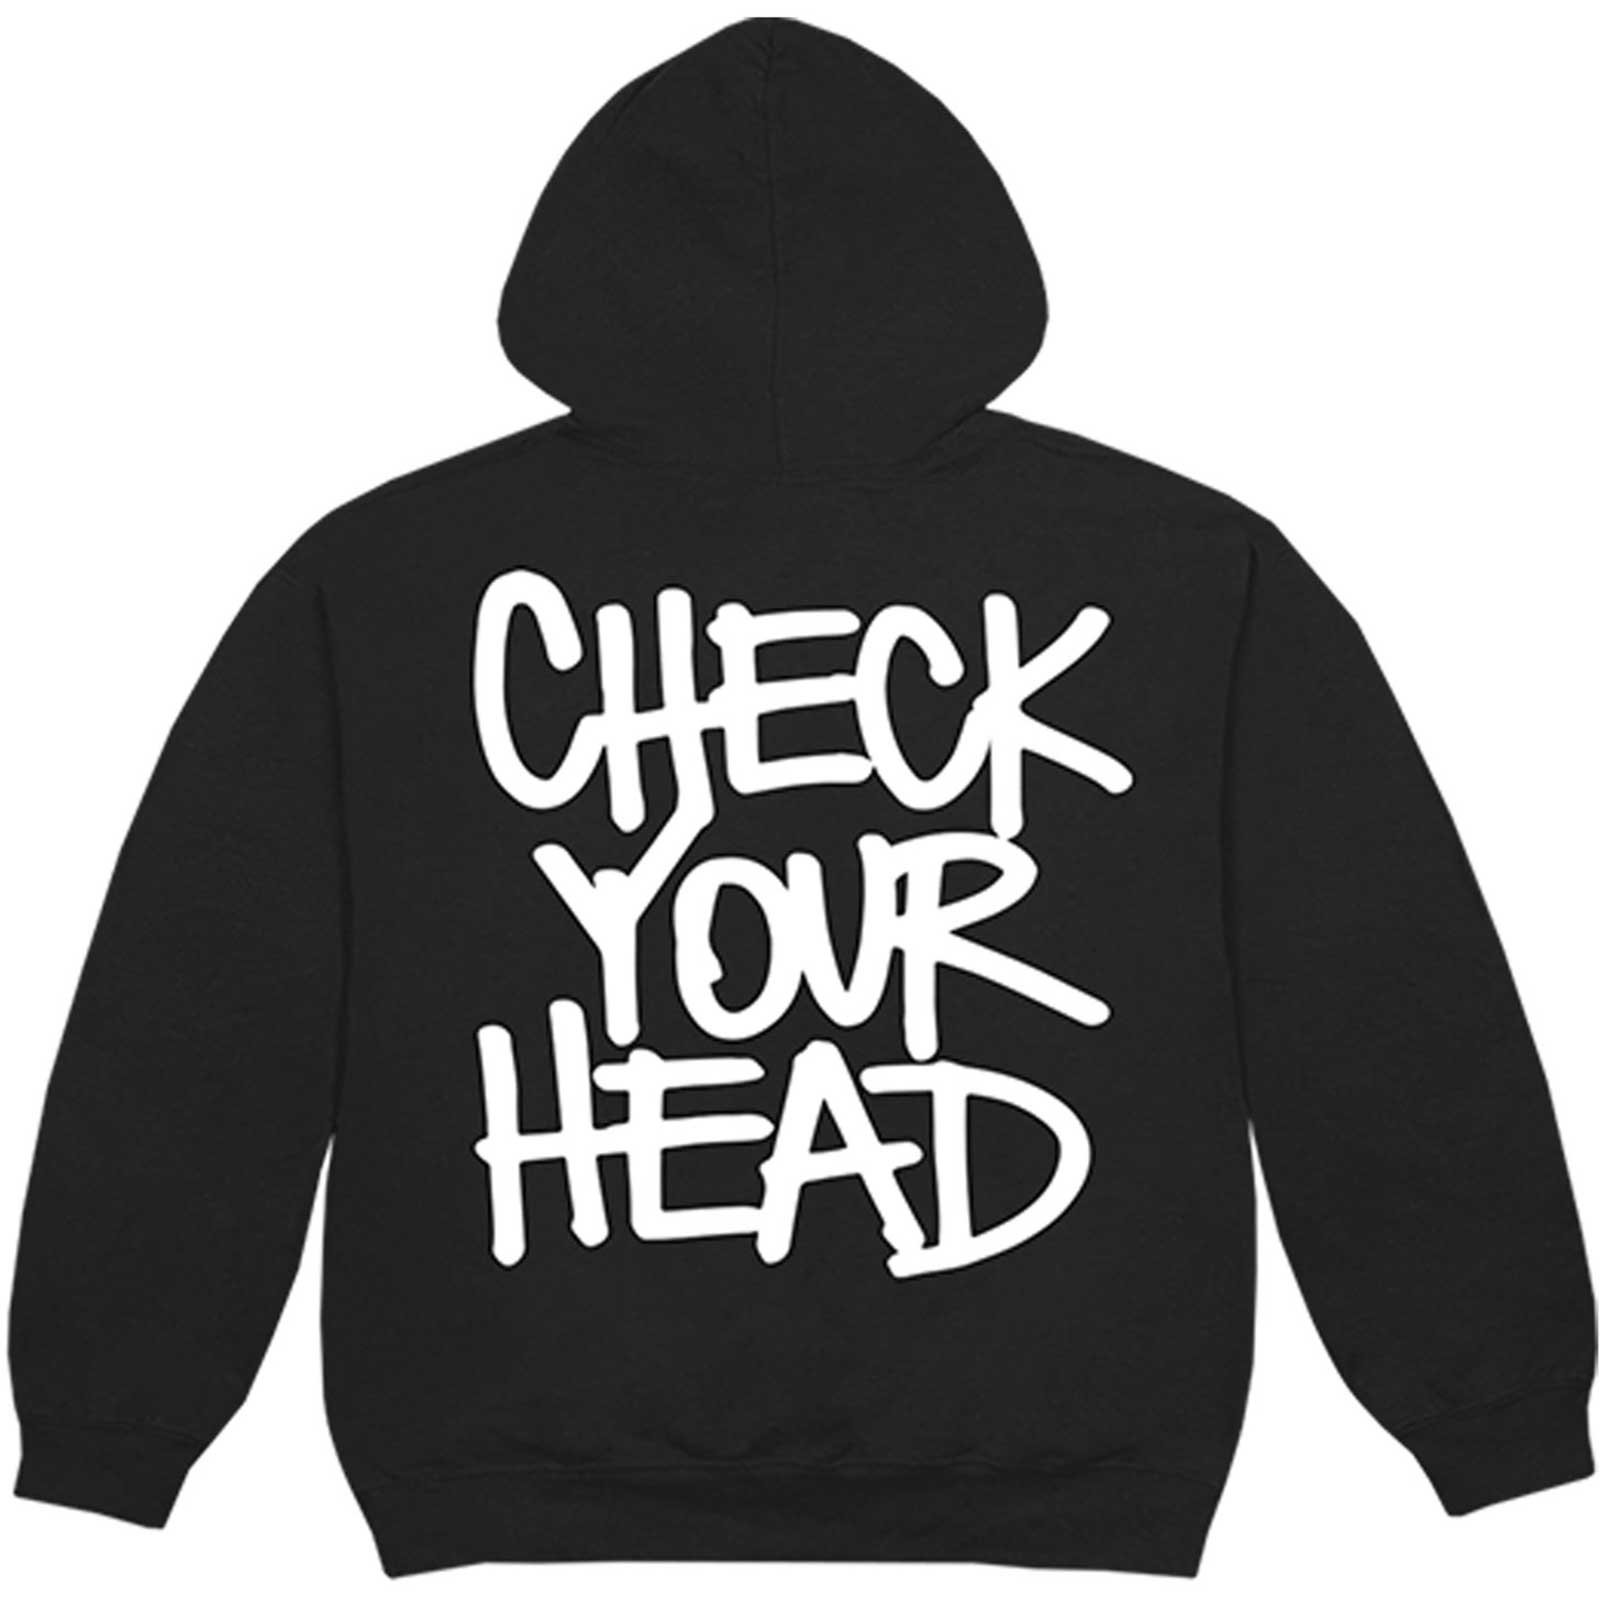 The Beastie Boys Unisex-Hoodie – Check Your Head – Schwarz, offiziell lizenziertes Design